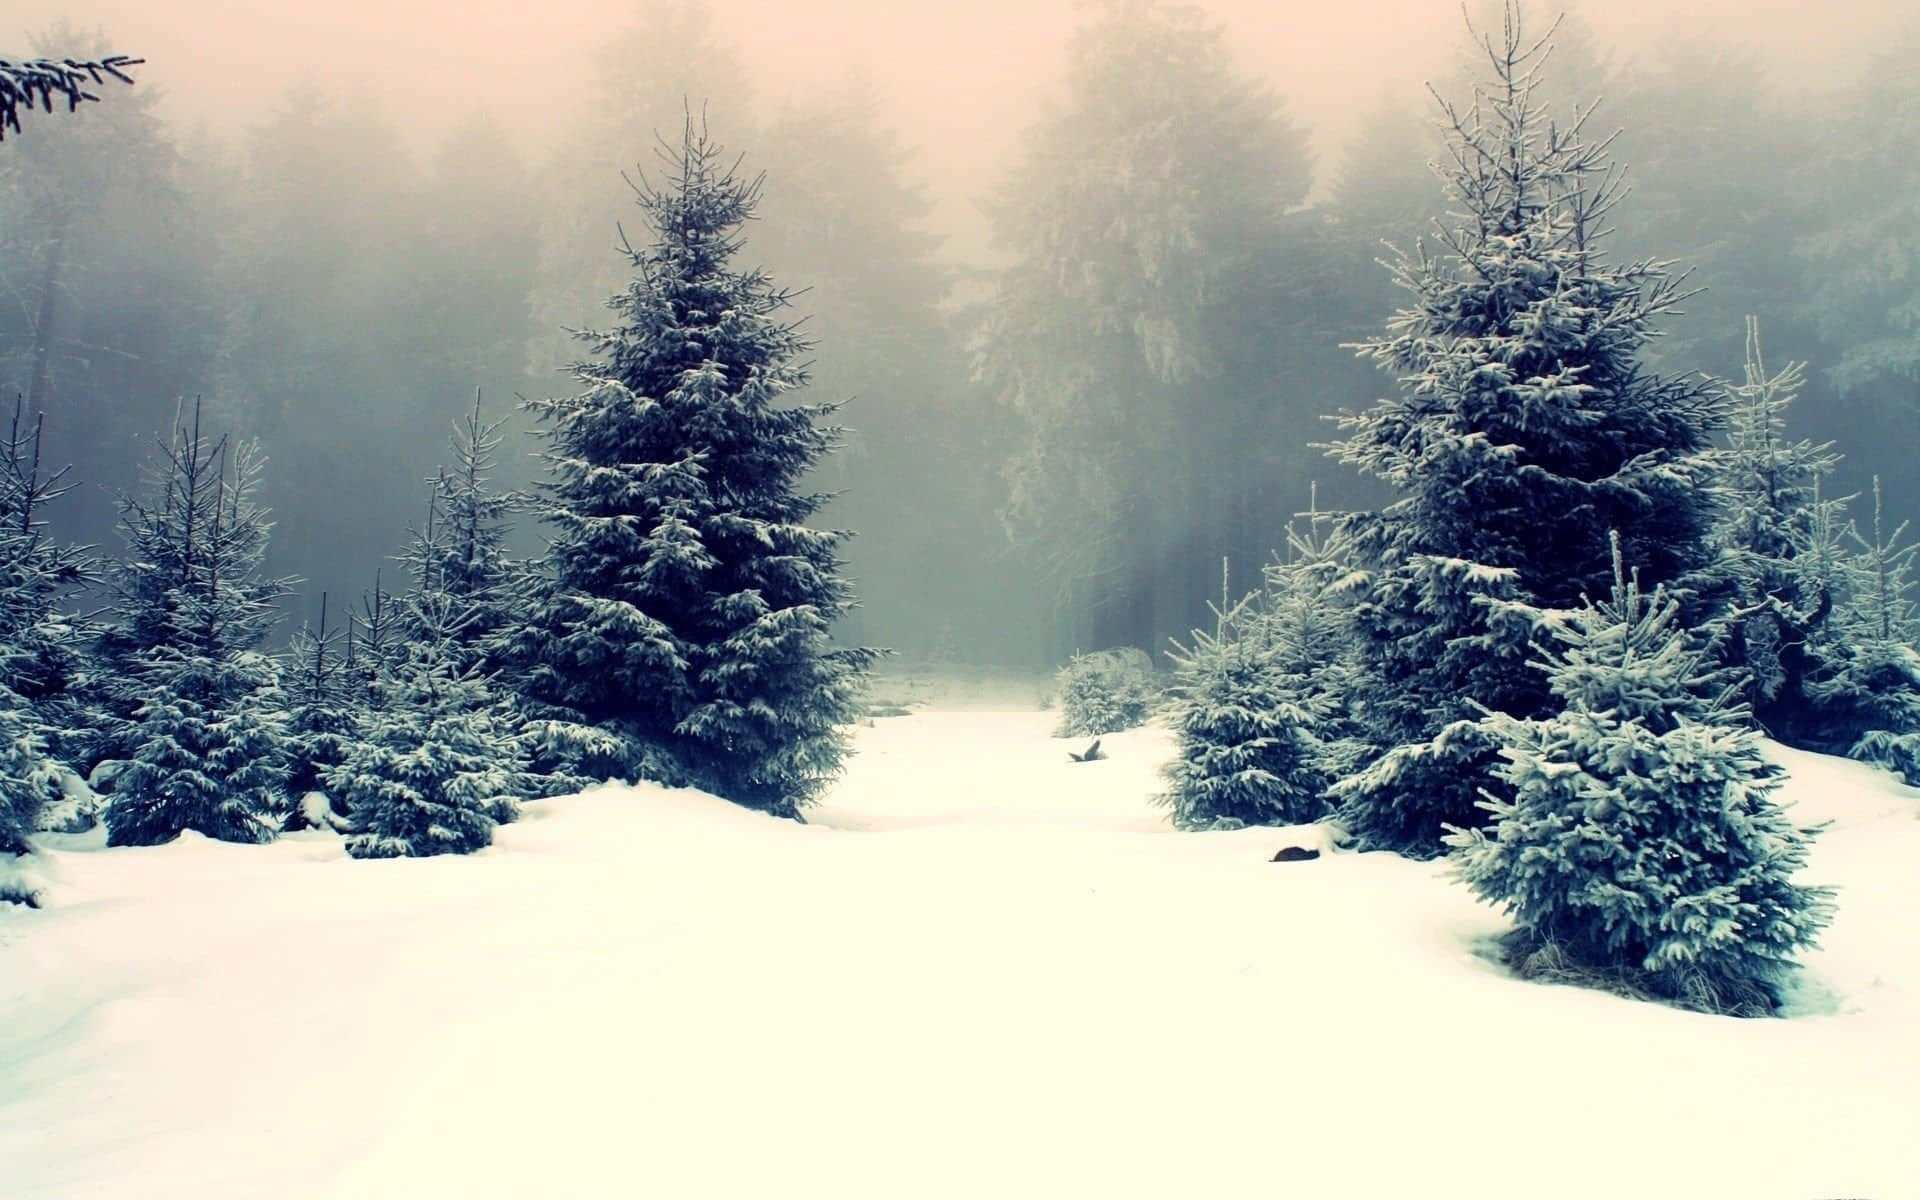 Árbolesserenos De Invierno En Un Paisaje Cubierto De Nieve. Fondo de pantalla